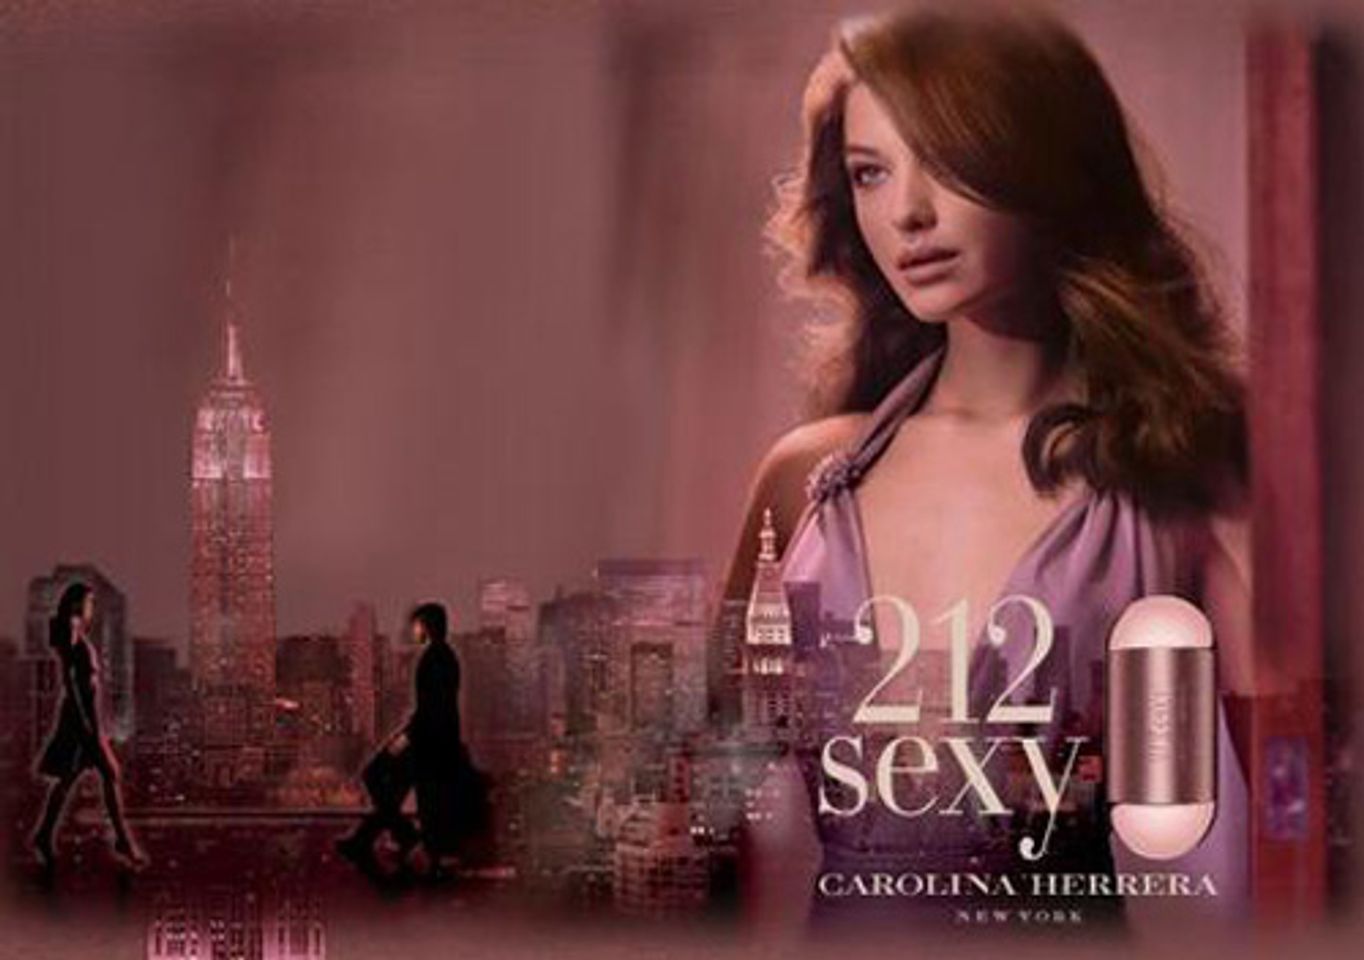 Nước hoa 212 Sexy thương hiệu Carolina Herrera 2